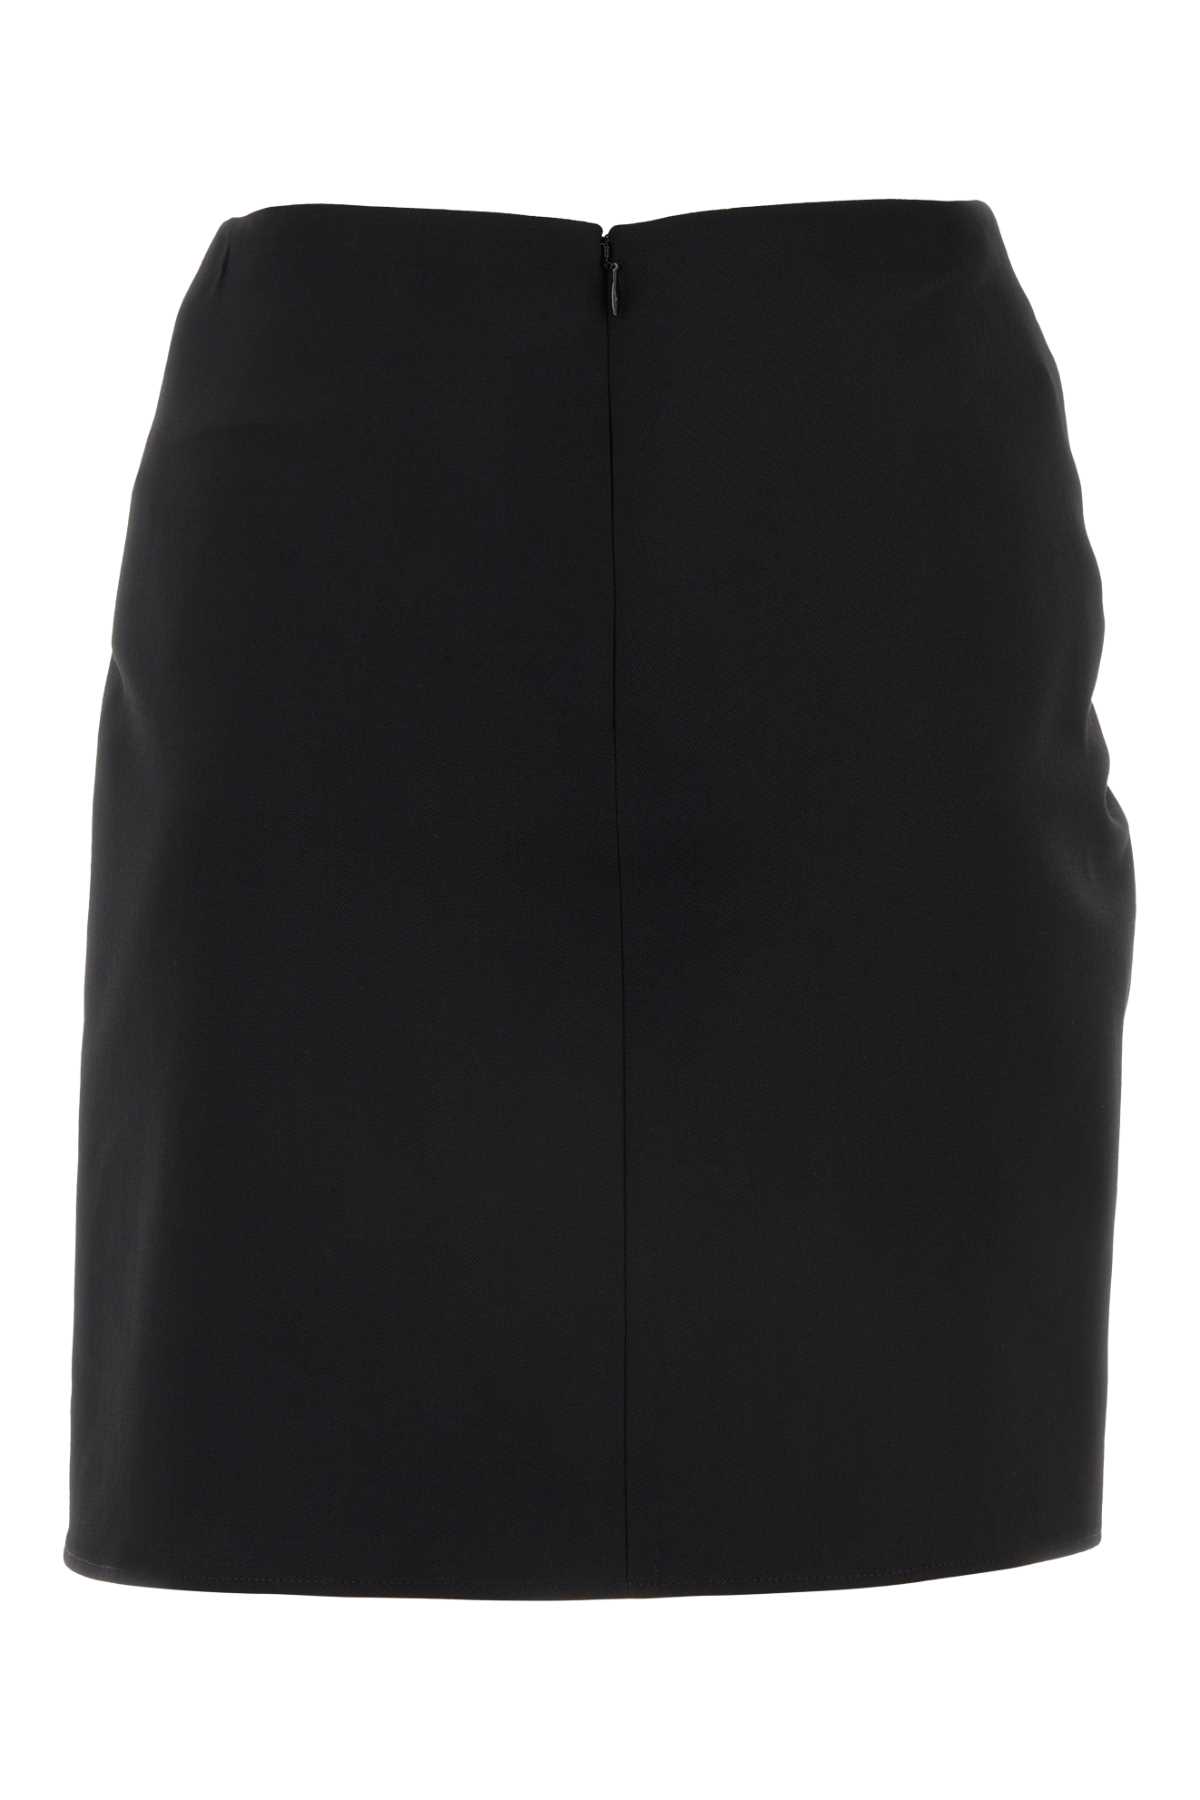 Off-white Black Wool Mini Skirt